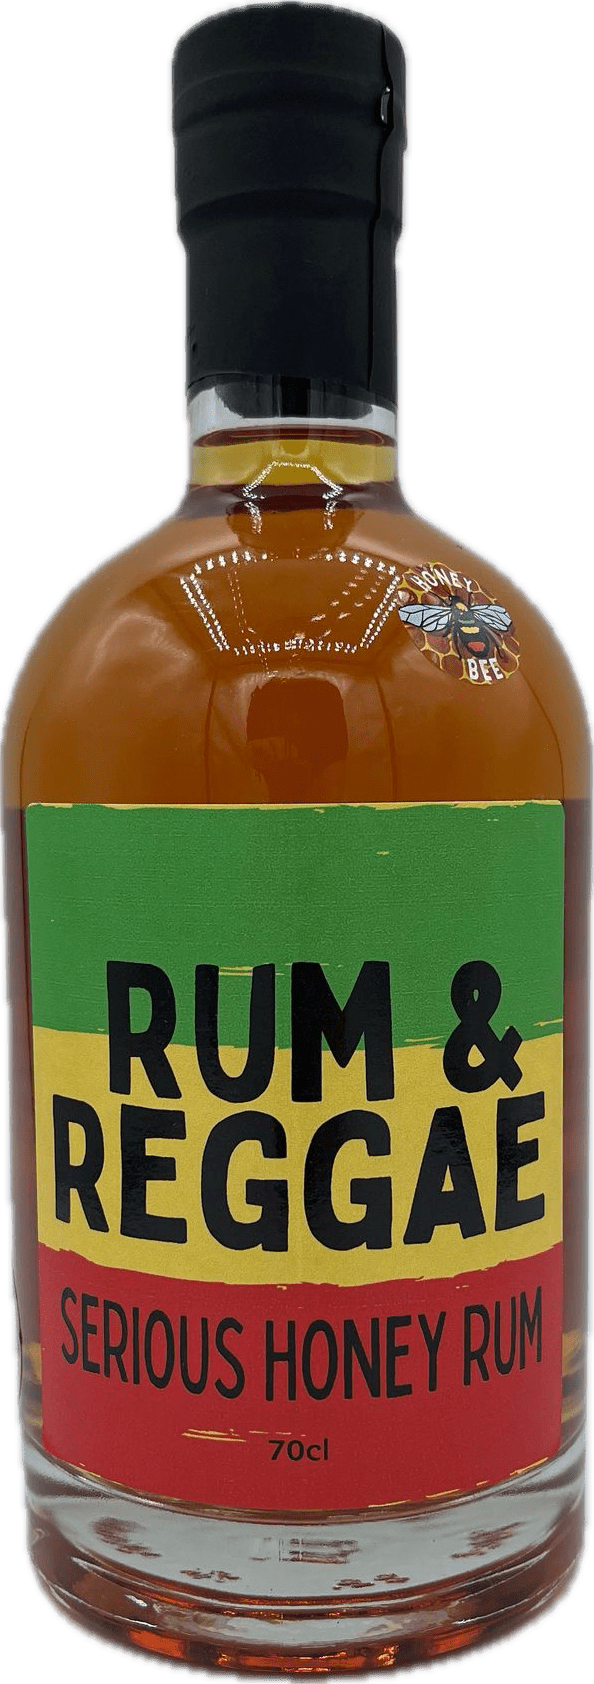 Rum & Reggae Serious Honey Rum 70cl